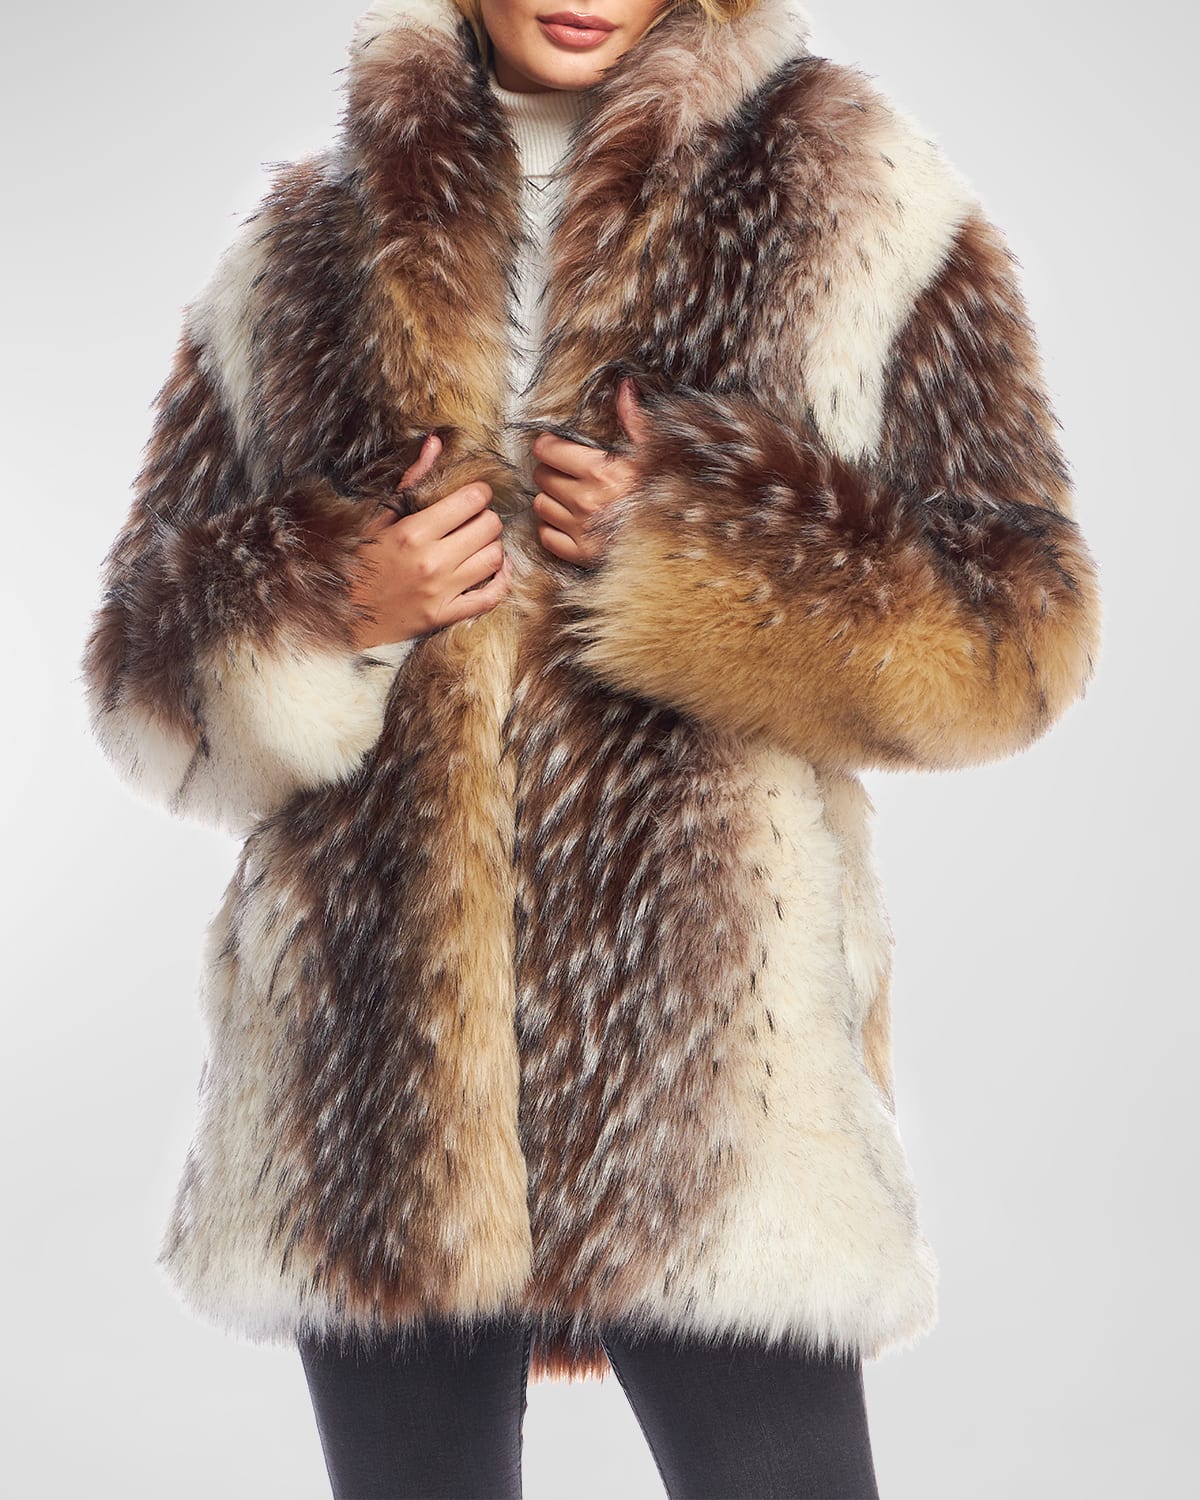 Fabulous Furs Limited Edition Faux Fur Coat